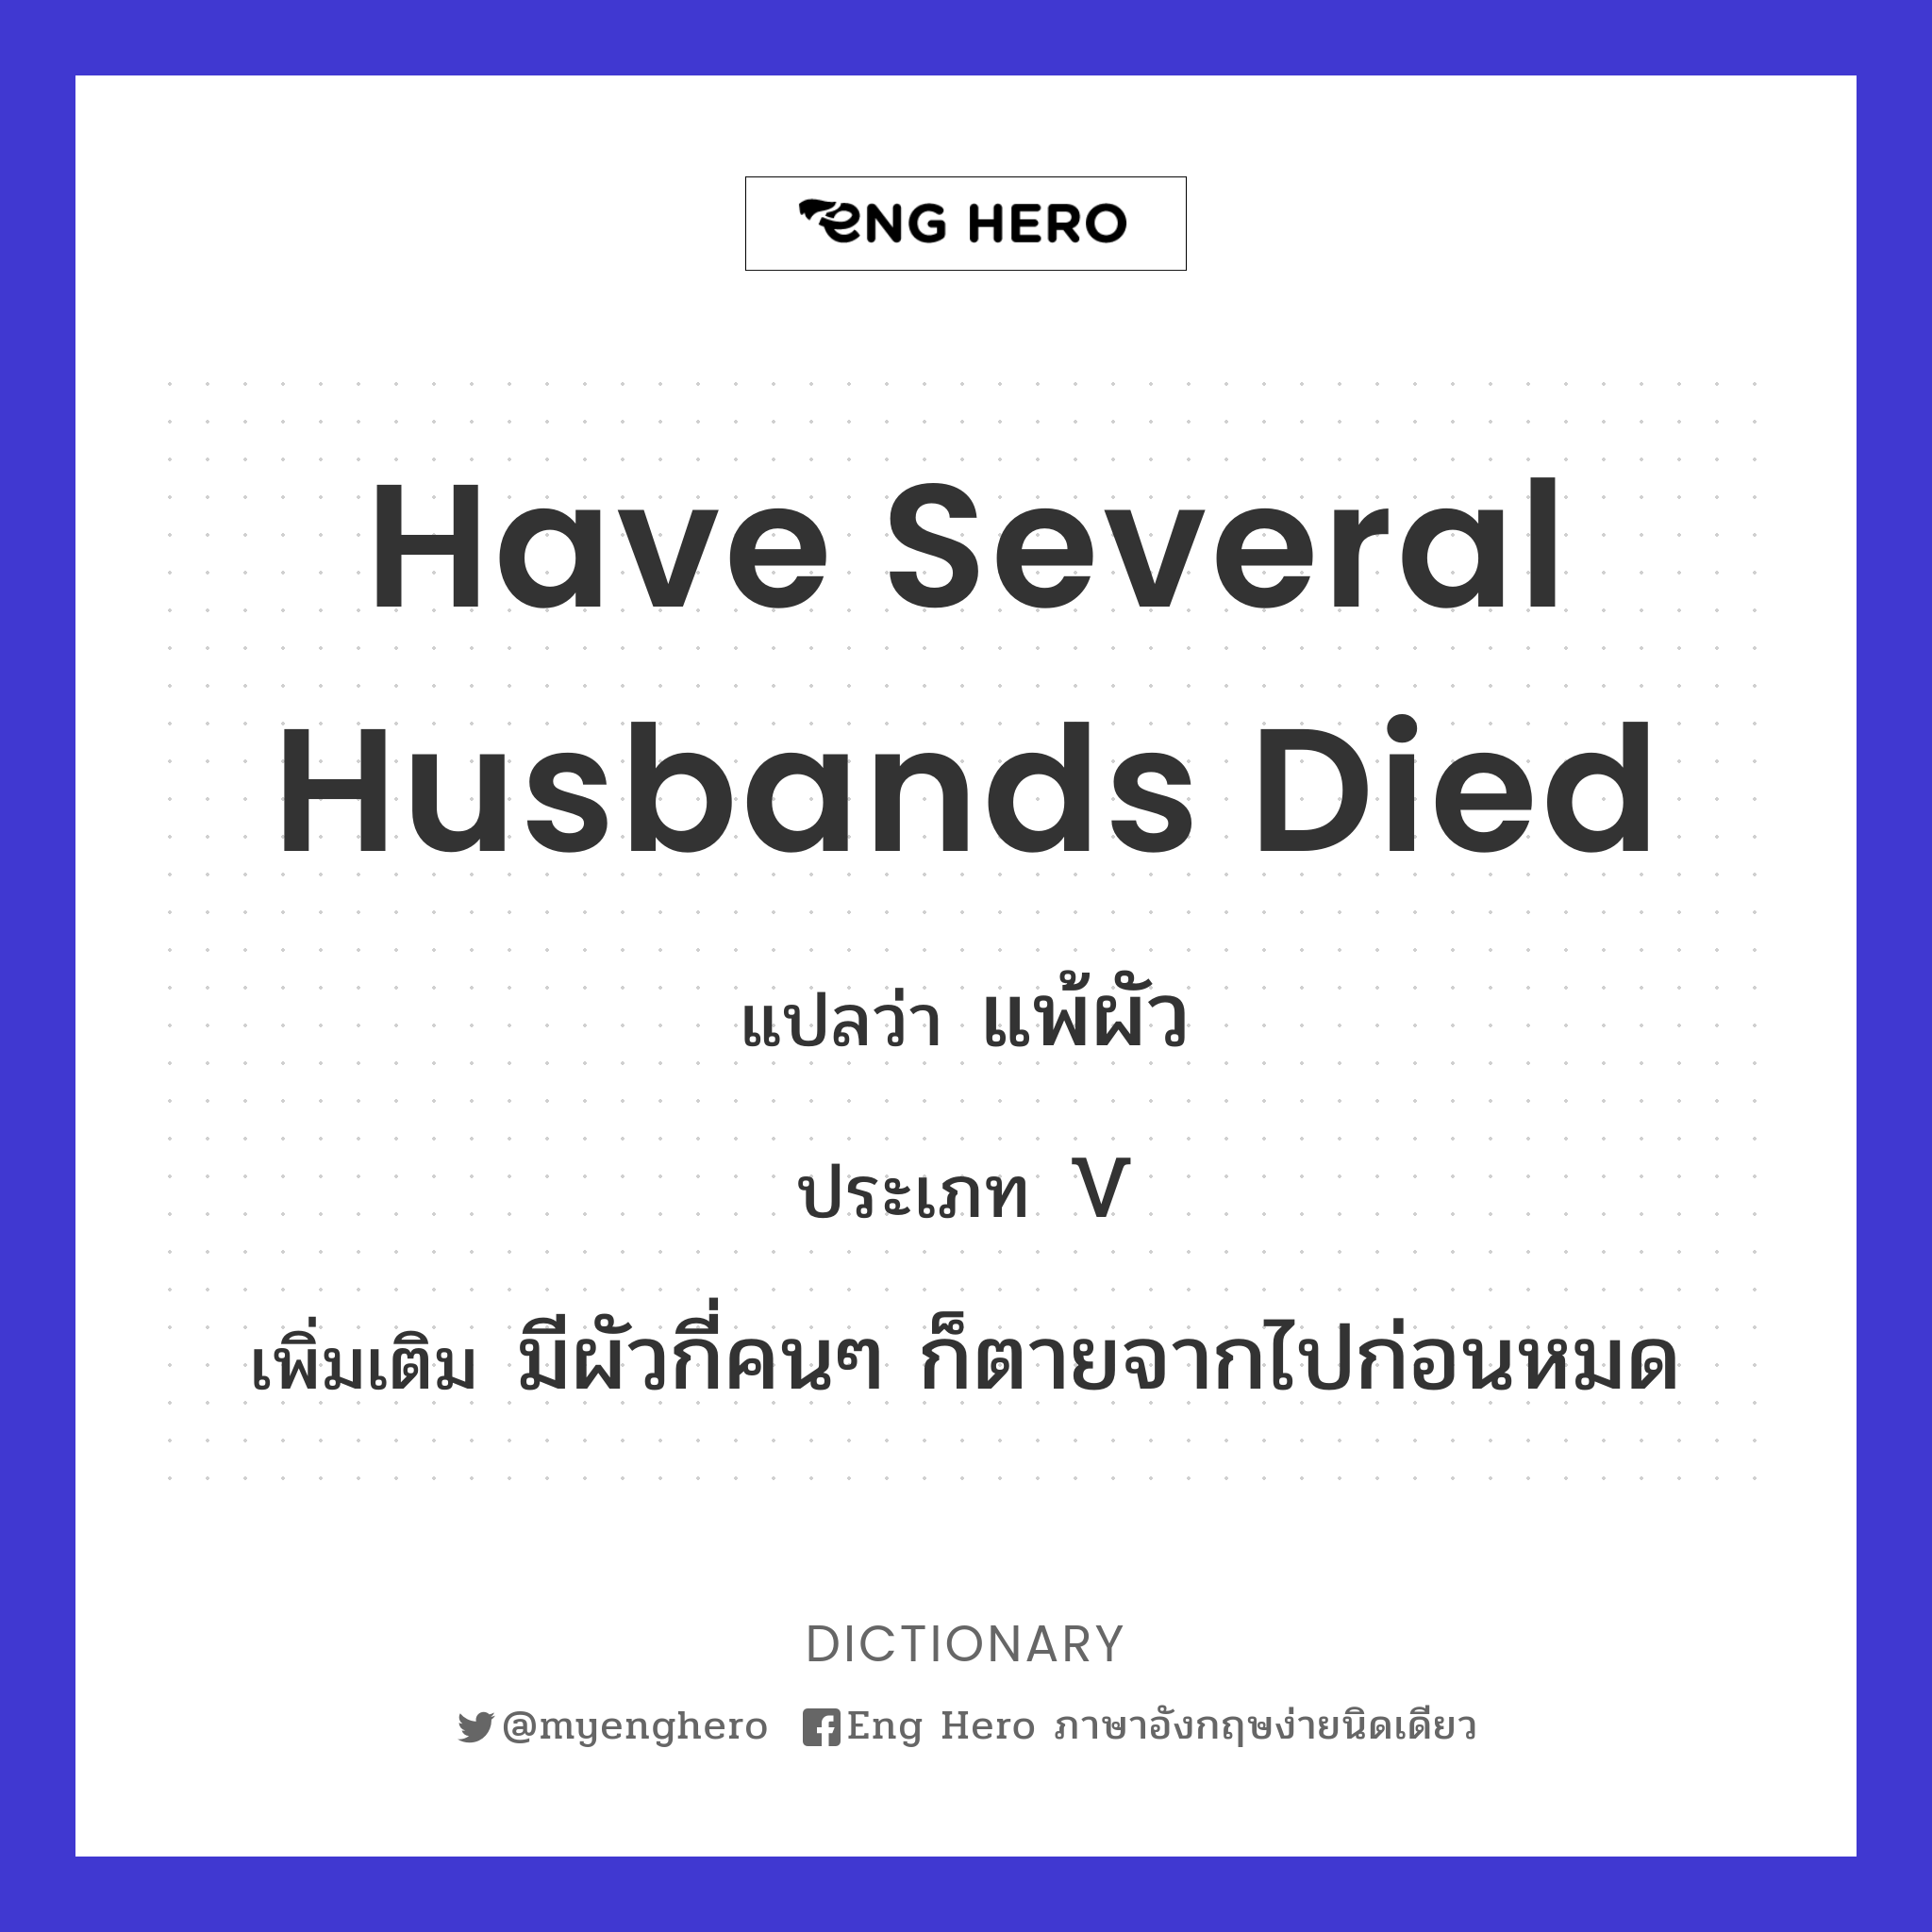 have several husbands died